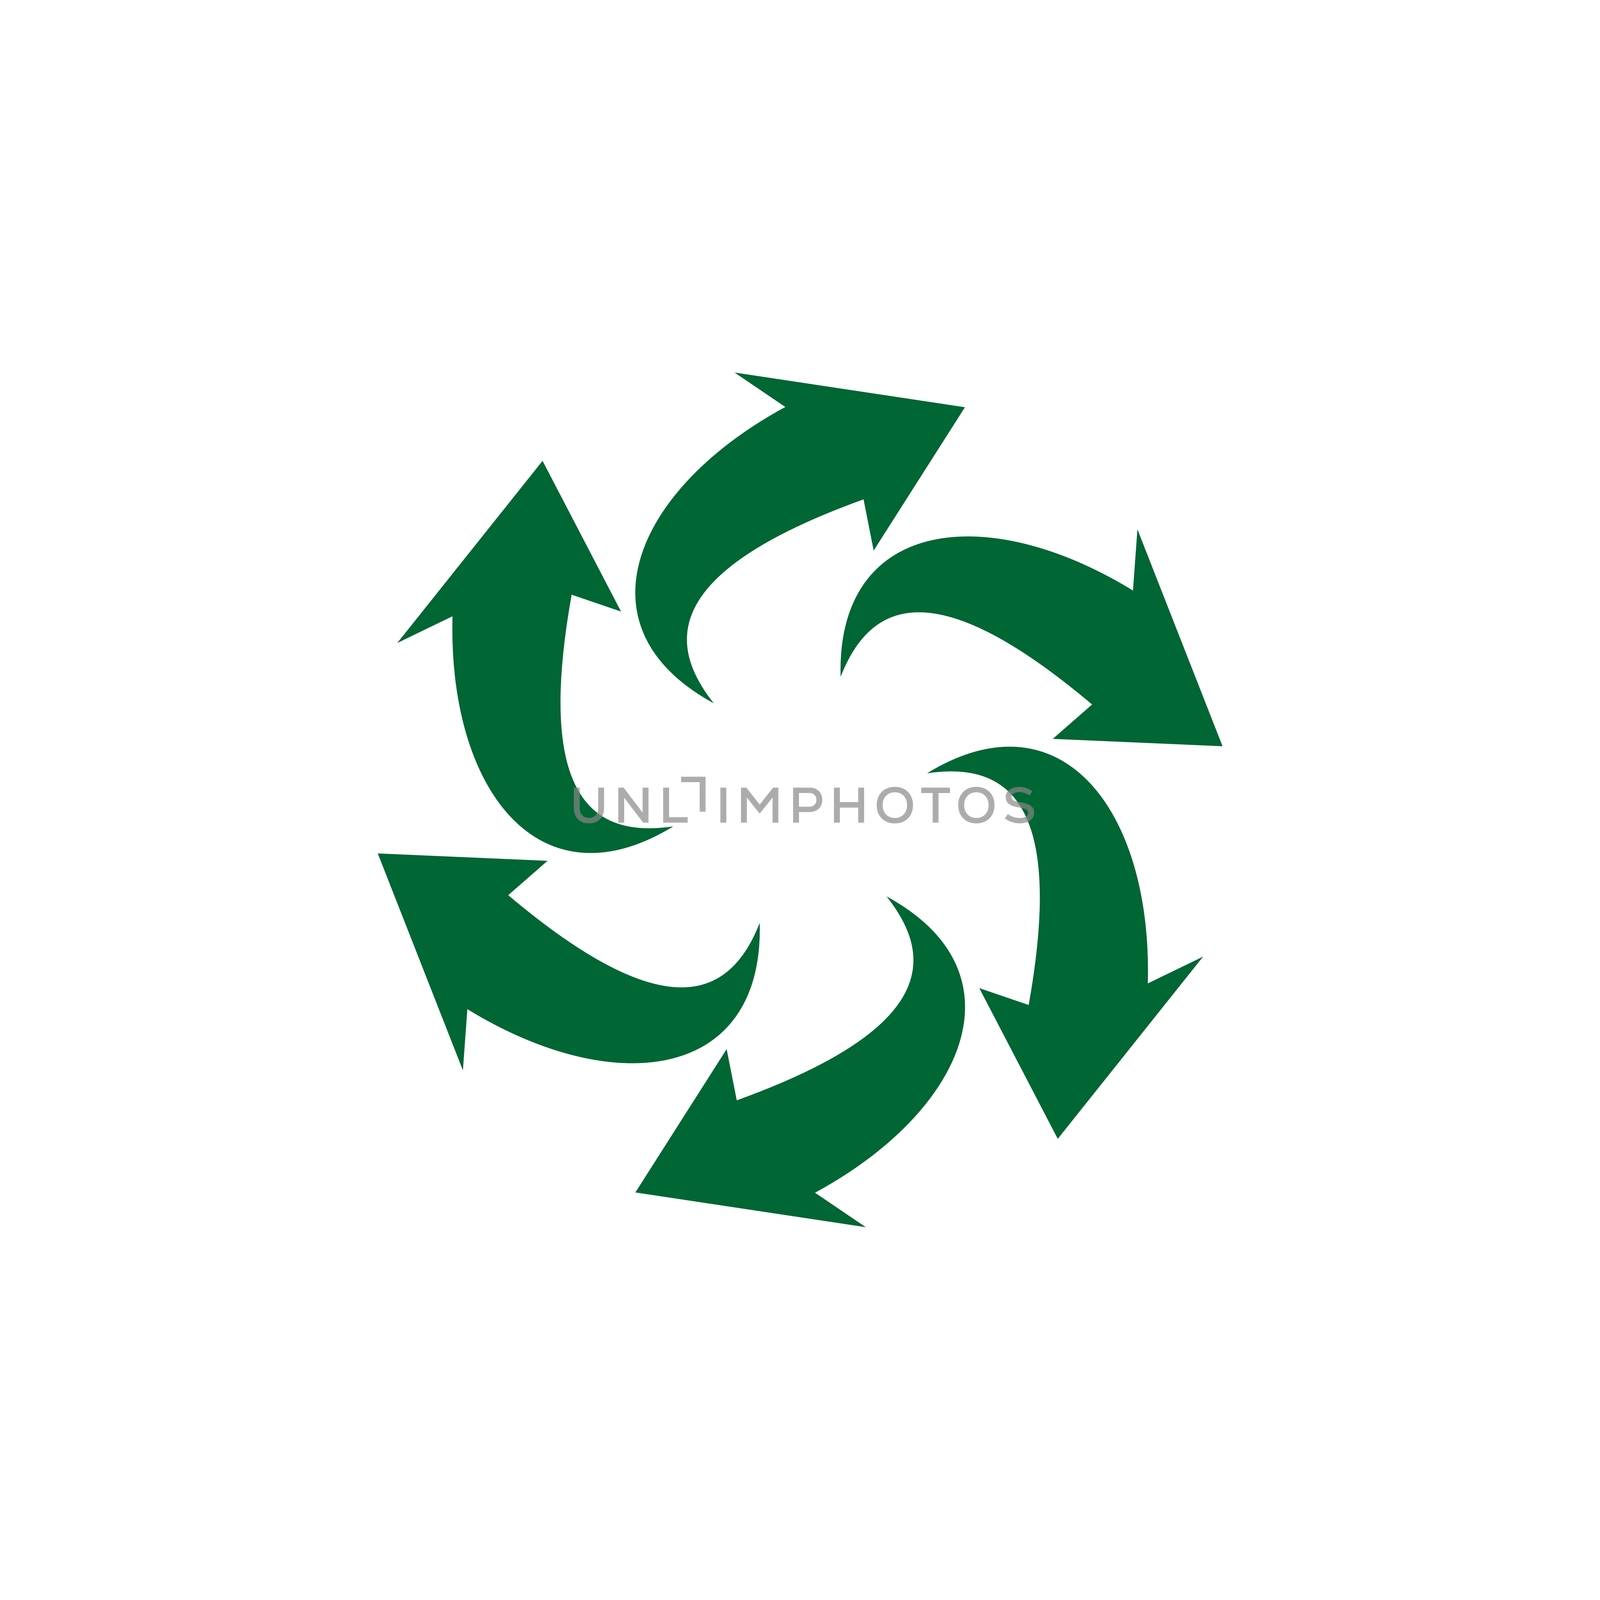 Green Arrow vector Logo Template Illustration Design. Vector EPS 10.